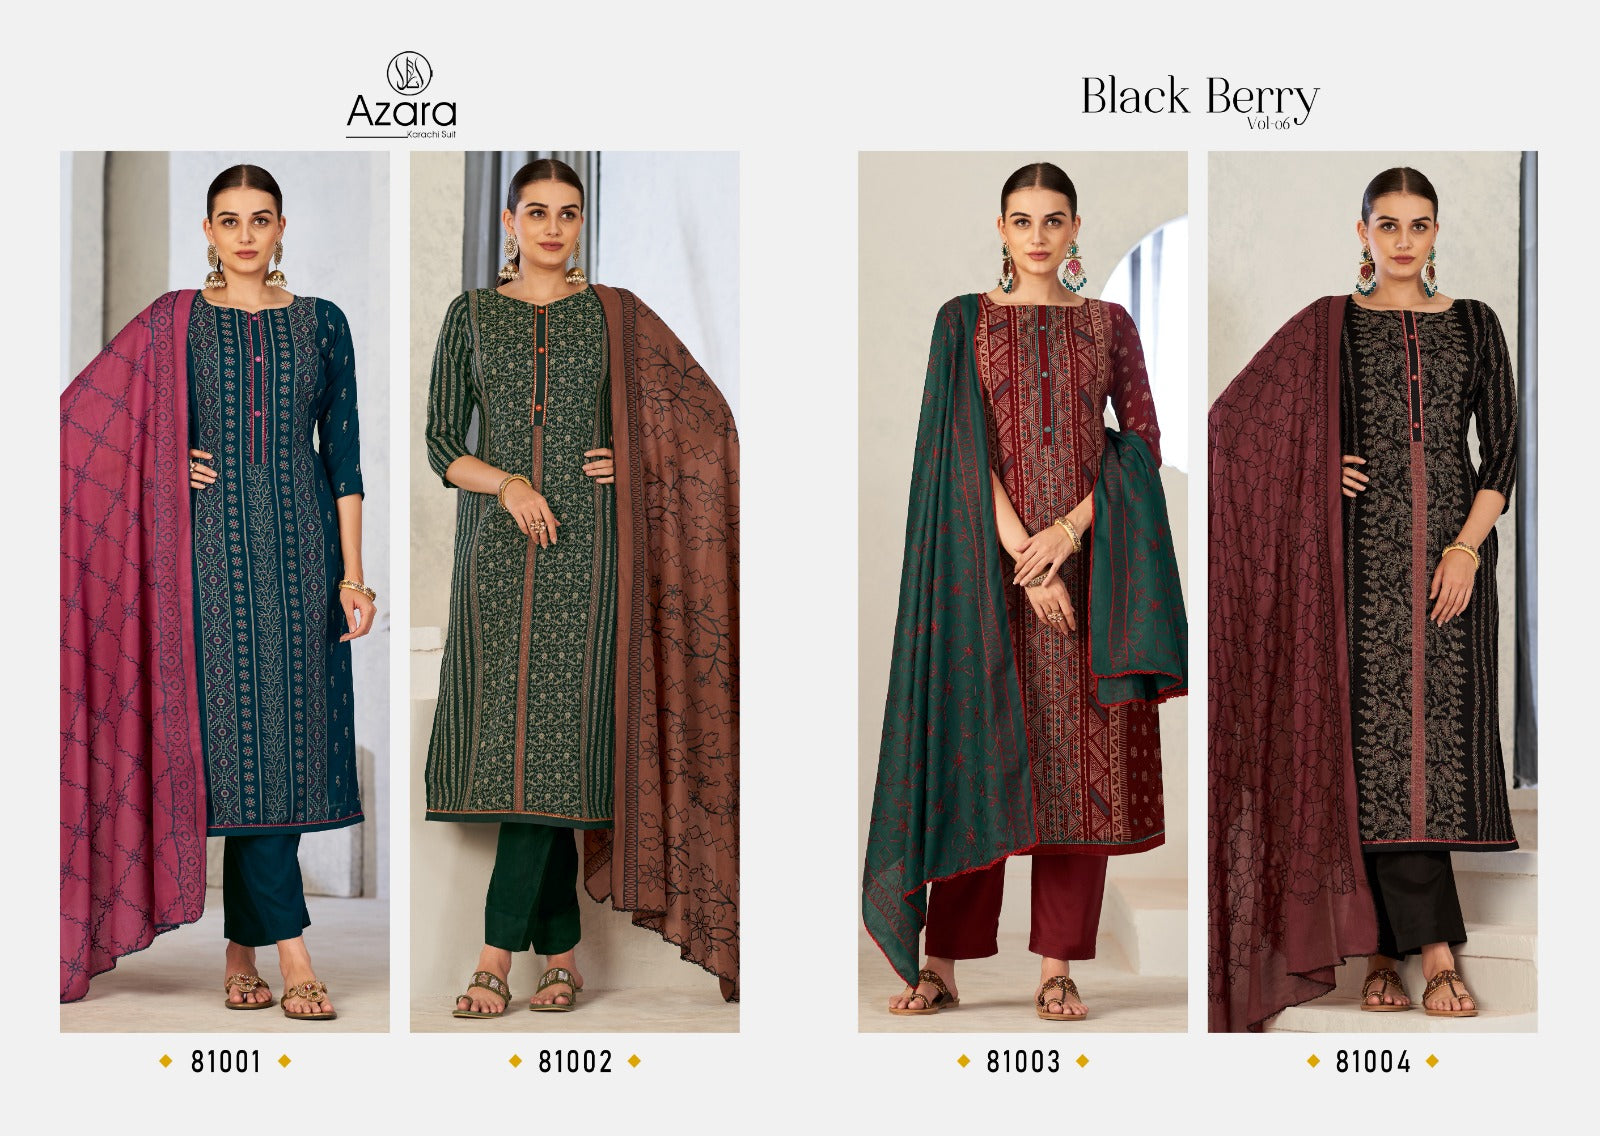 Azara karachi Suit Black Berry Vol 6 Cotton With Neck Line Work Dress Material Wholesale Catalouge - jilaniwholesalesuit